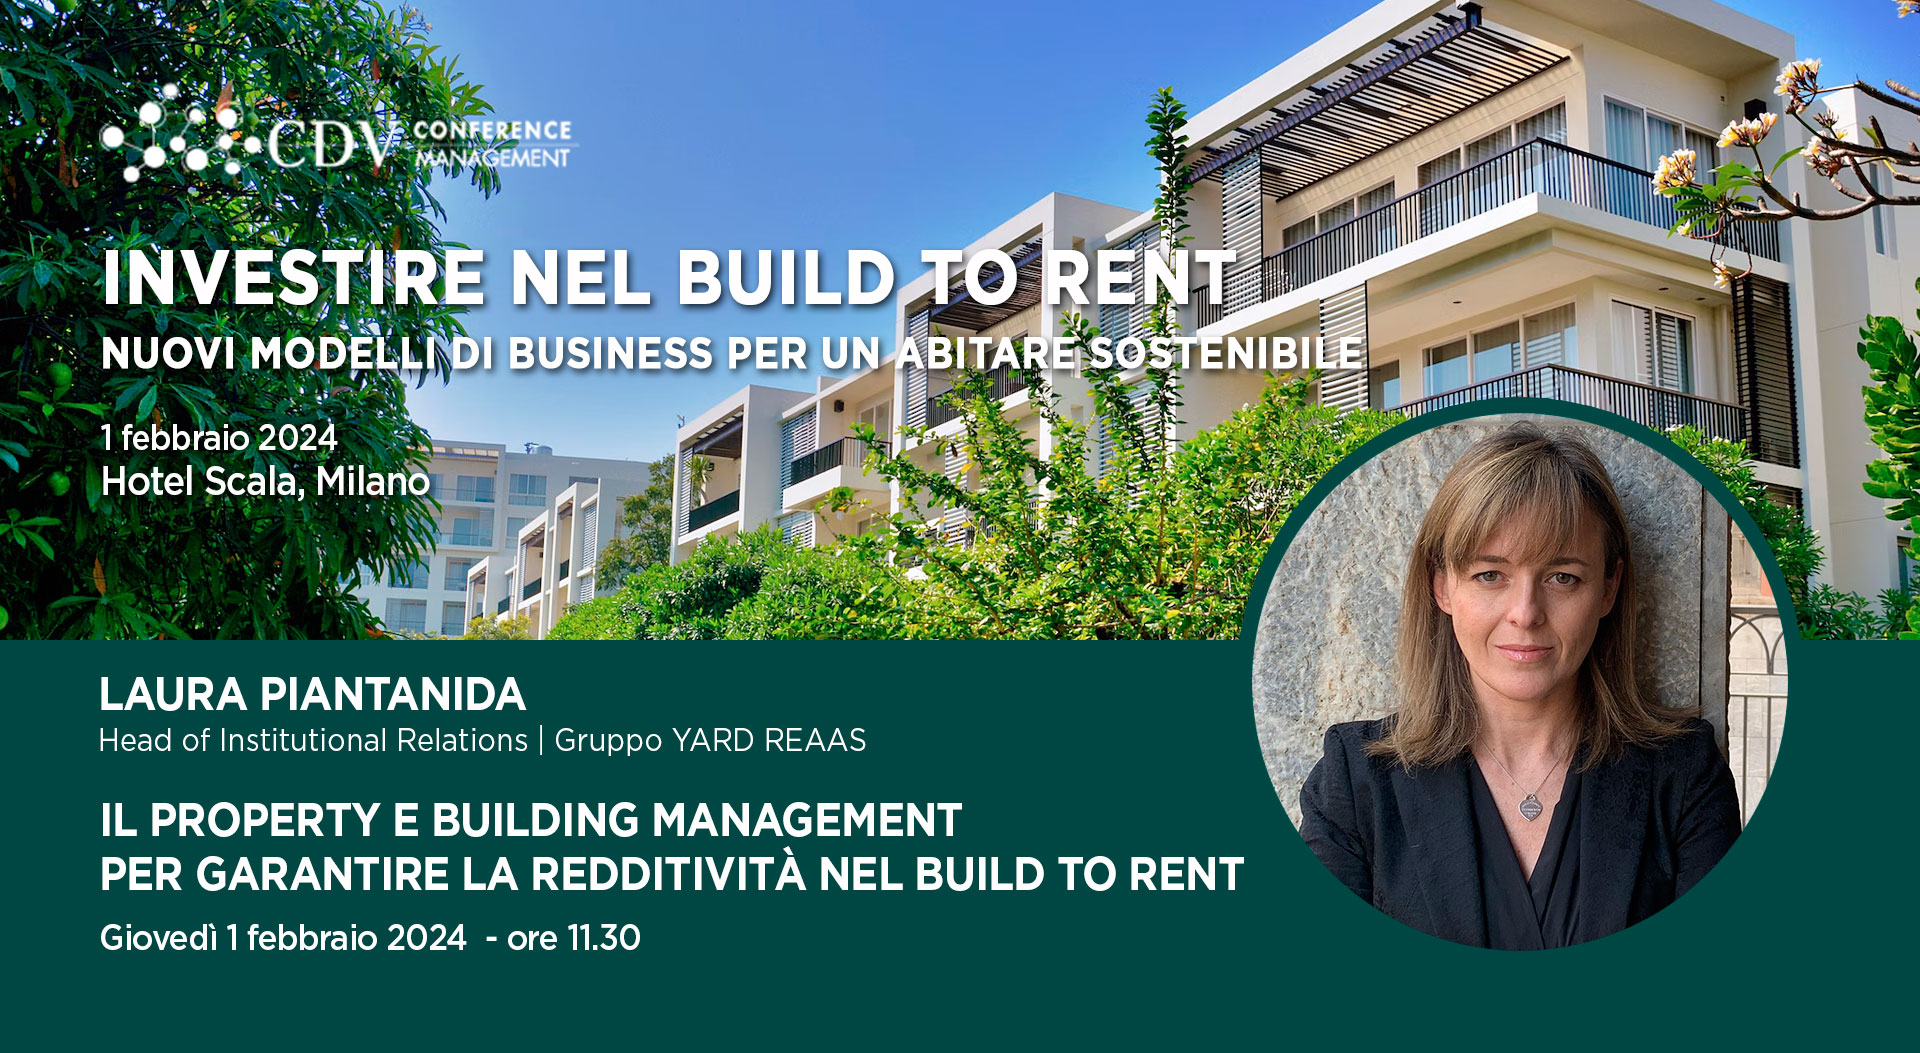 Laura Piantanida speaker al convegno “Investire nel Build to Rent. Nuovi modelli di business per un abitare sostenibile” di CDV Conference Management